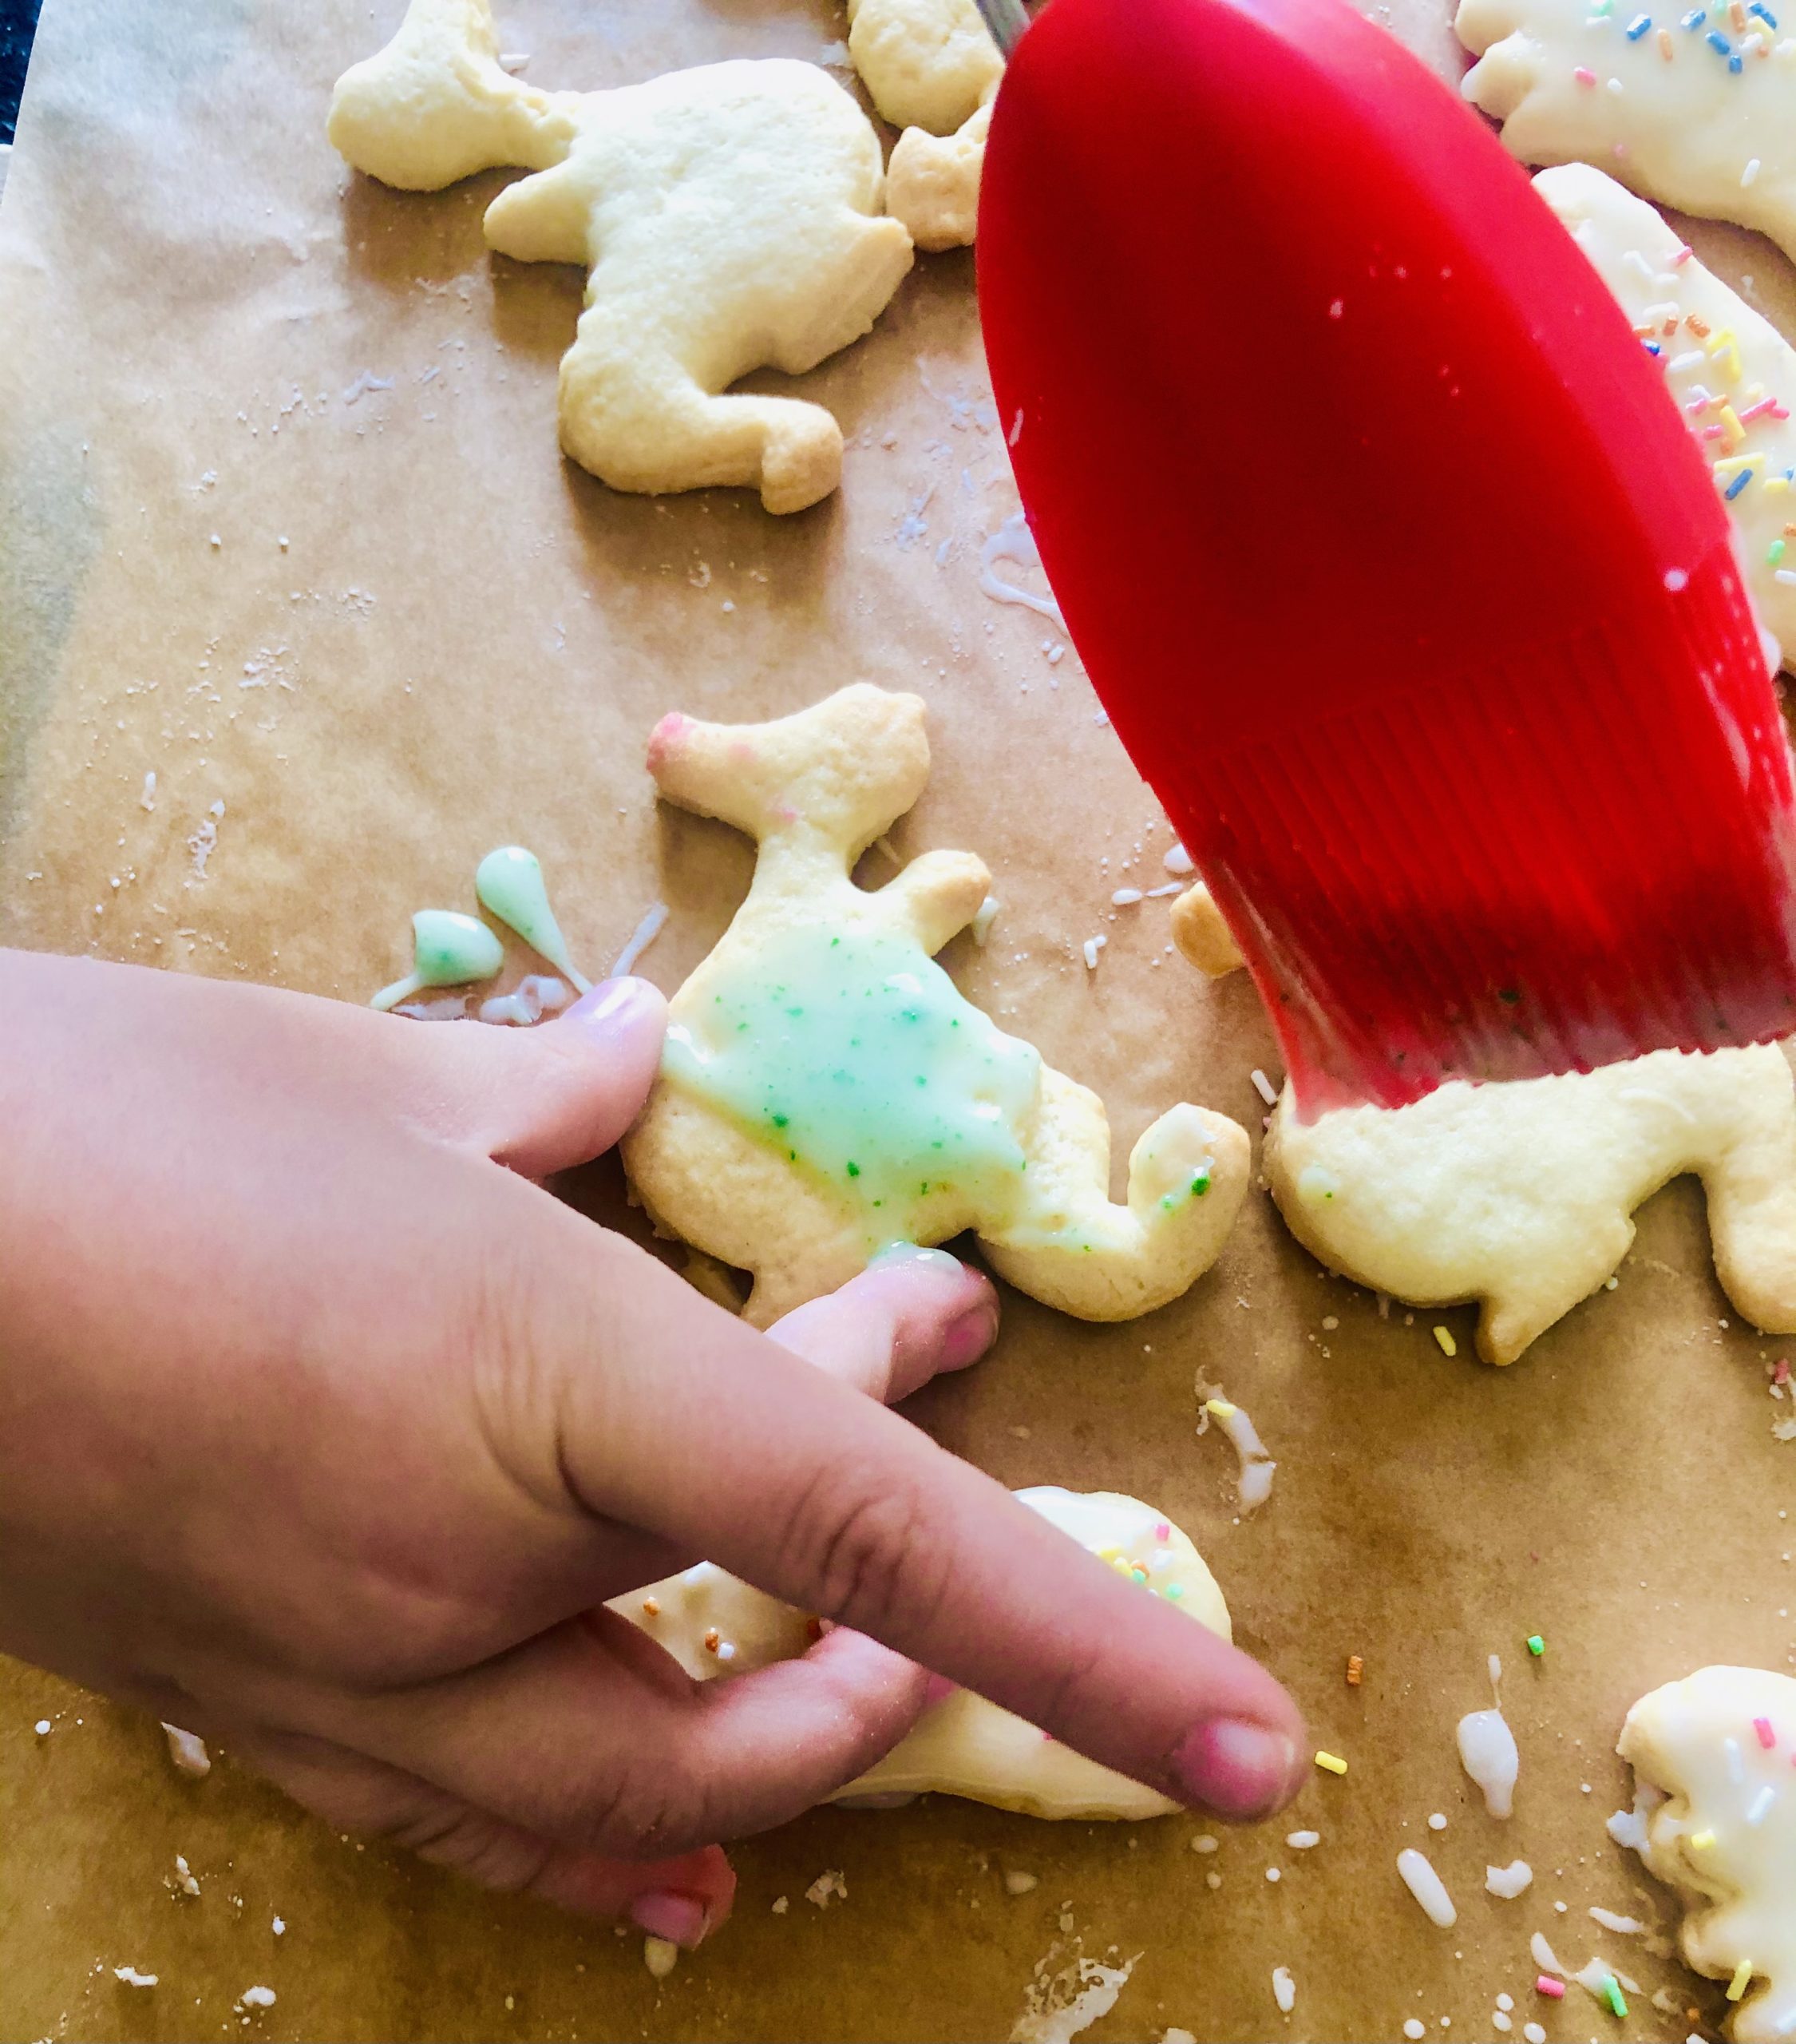 Bild zum Schritt 8 für die Kinder-Beschäftigung: 'Jetzt könnt ihr mit dem Pinsel eure Kekse bestreichen. ...'